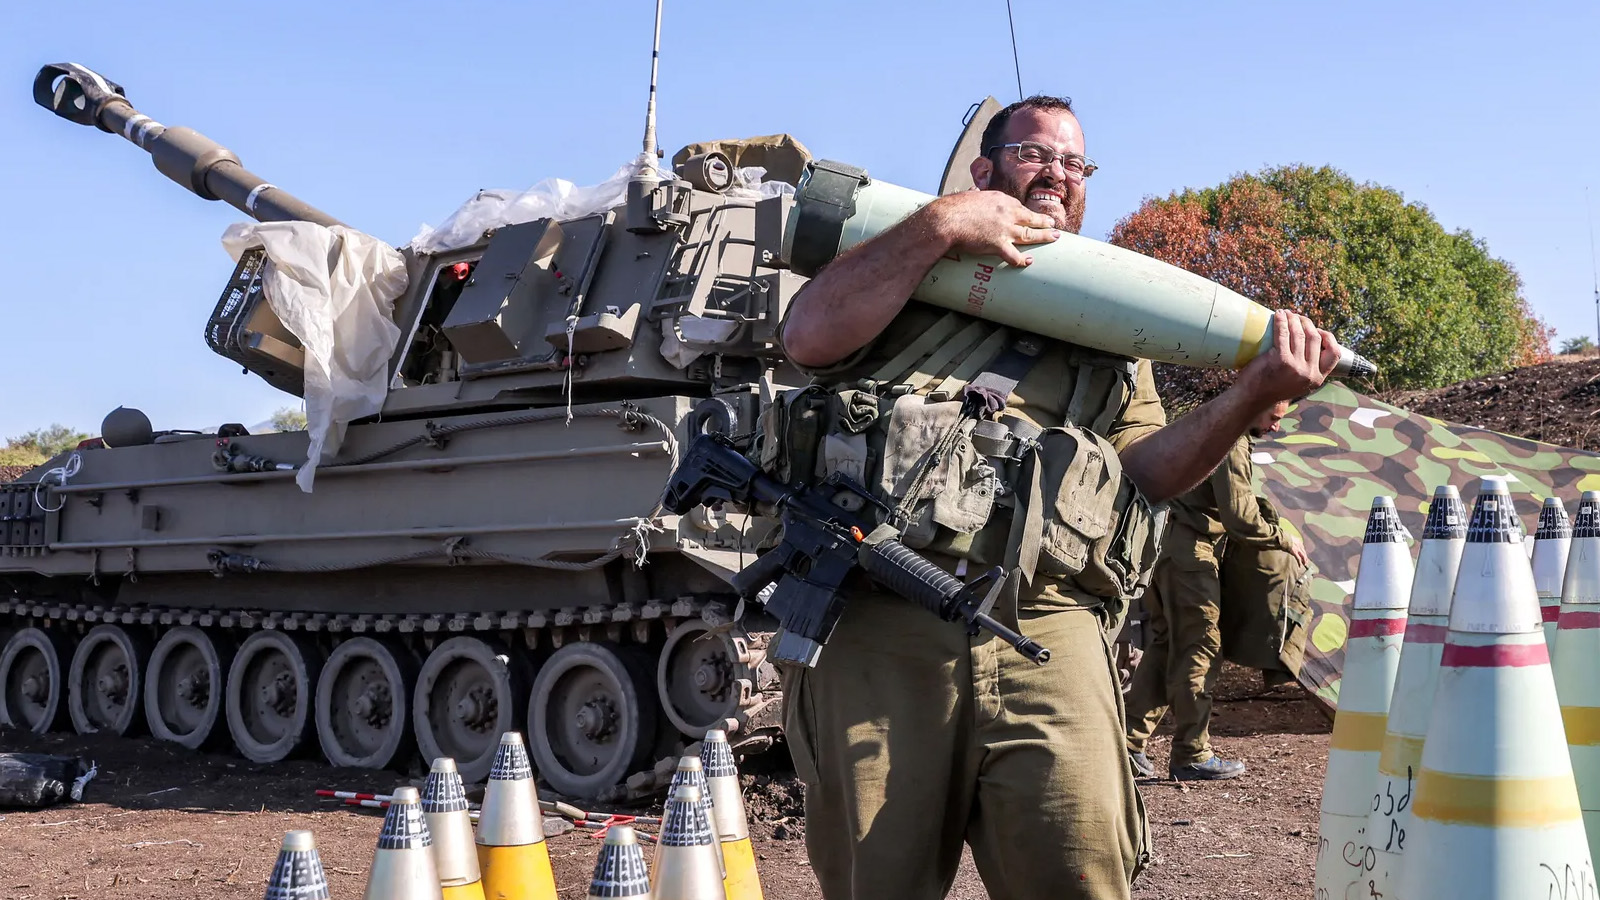 جندي إسرائيلي يحرّك قذيفة مدفعية 155 ملم بالقرب من مدفع هاوتزر ذاتية الدفع بالقرب من الحدود الإسرائيلية اللبنانية، حيث تخوض القوات الإسرائيلية مناوشات مع مقاتلي حزب الله اللبناني